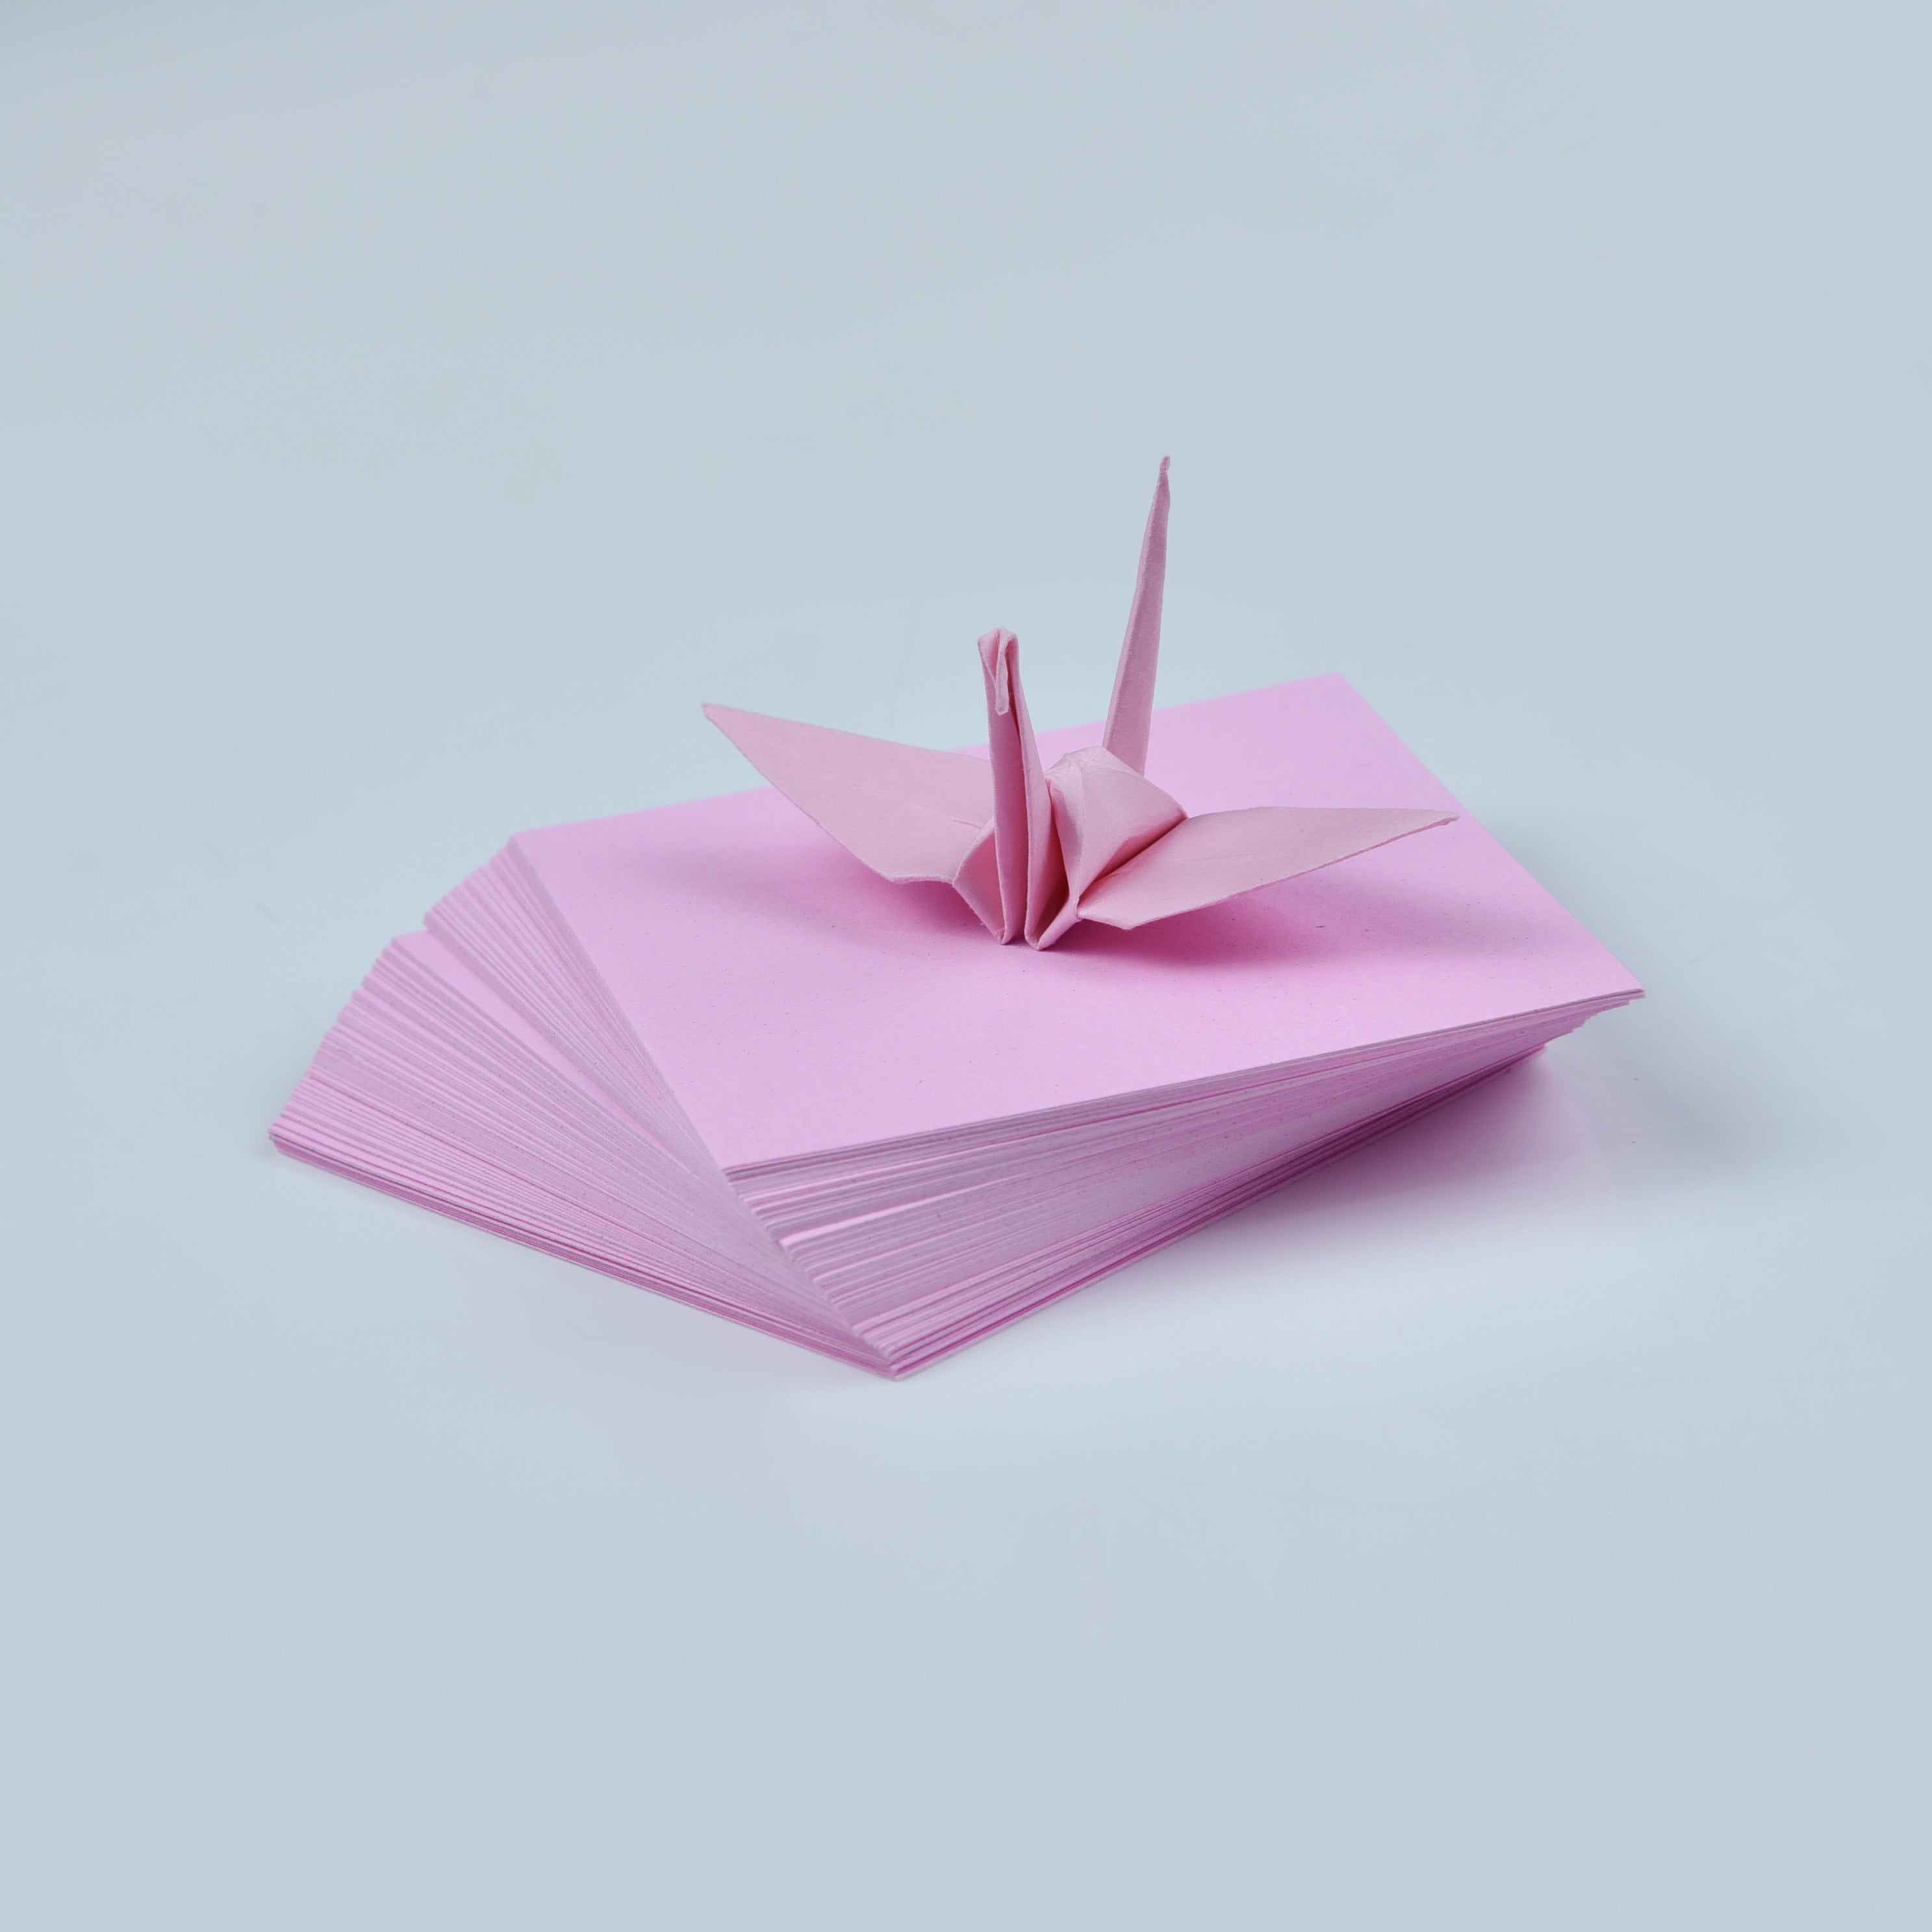 100 Hojas de Papel Origami - 3x3 pulgadas - Paquete de Papel Cuadrado para Plegar, Grullas de Origami y Decoración - S12